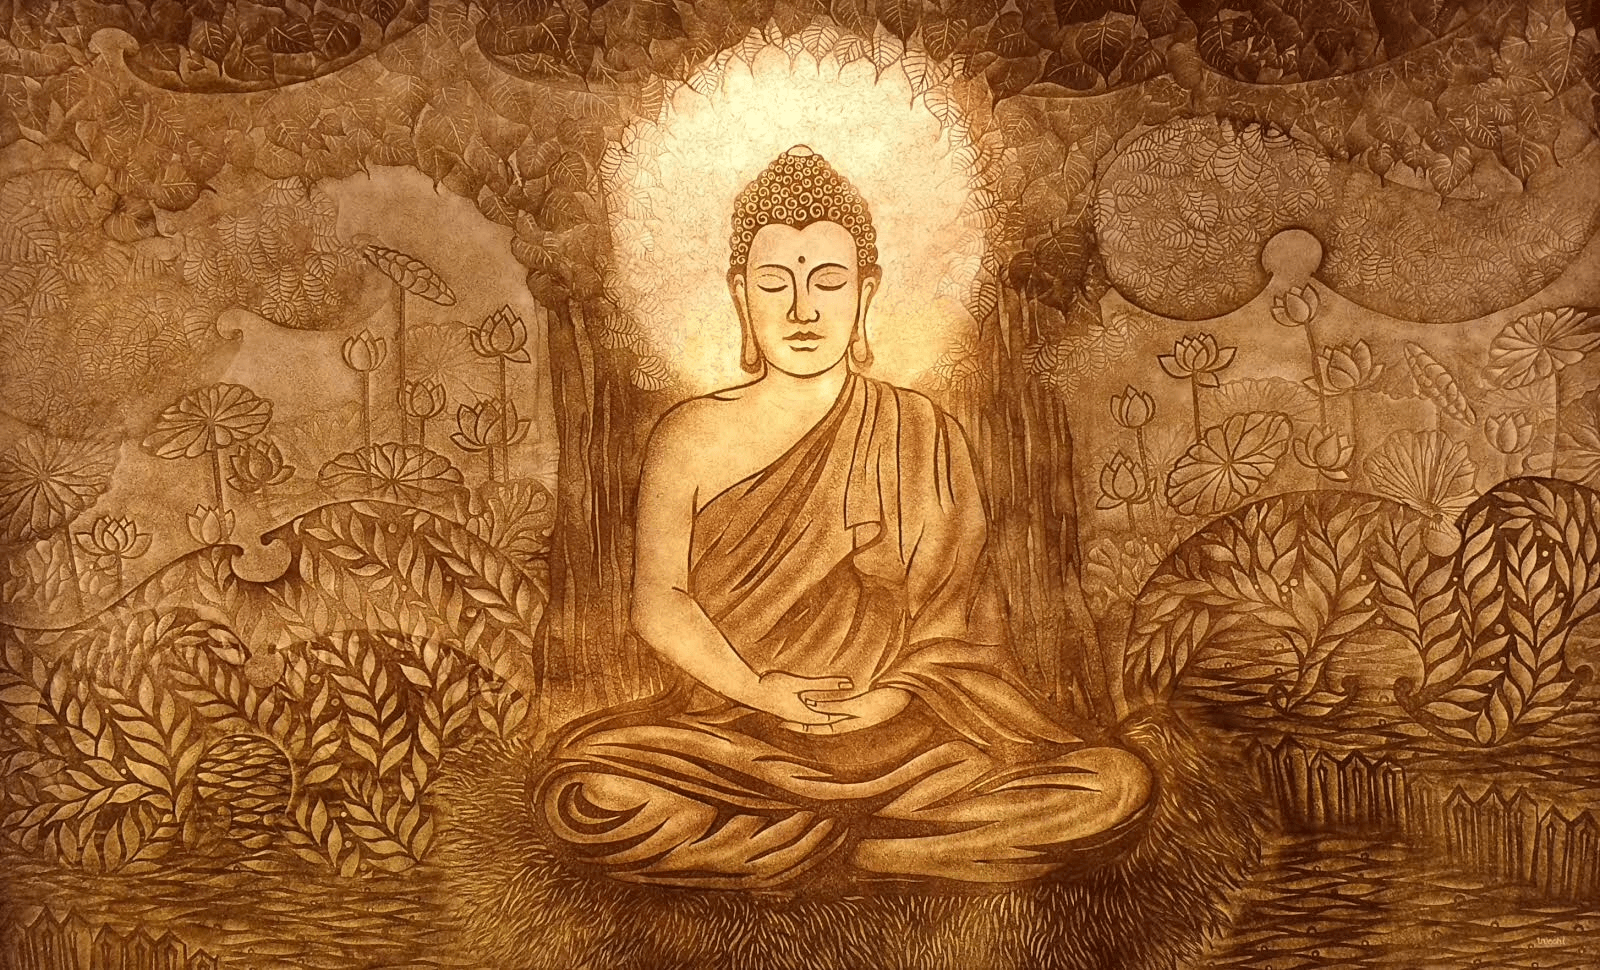 Tranh Trúc Chỉ Đức Phật tâm linh